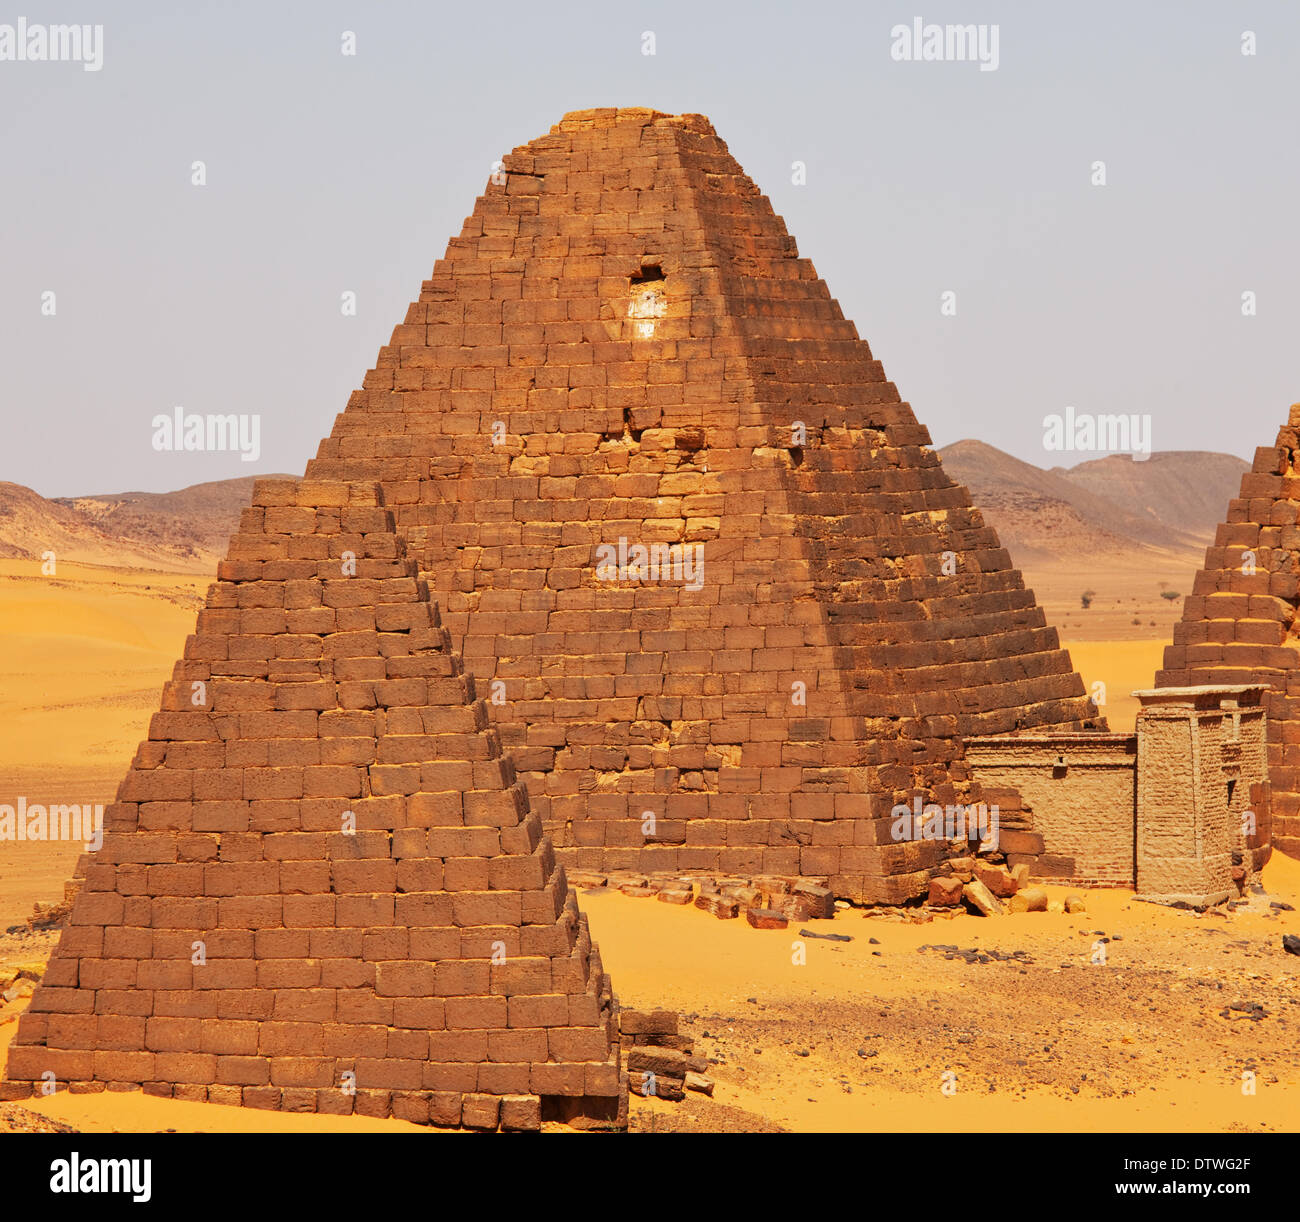 Pyramids in Sudan Stock Photo